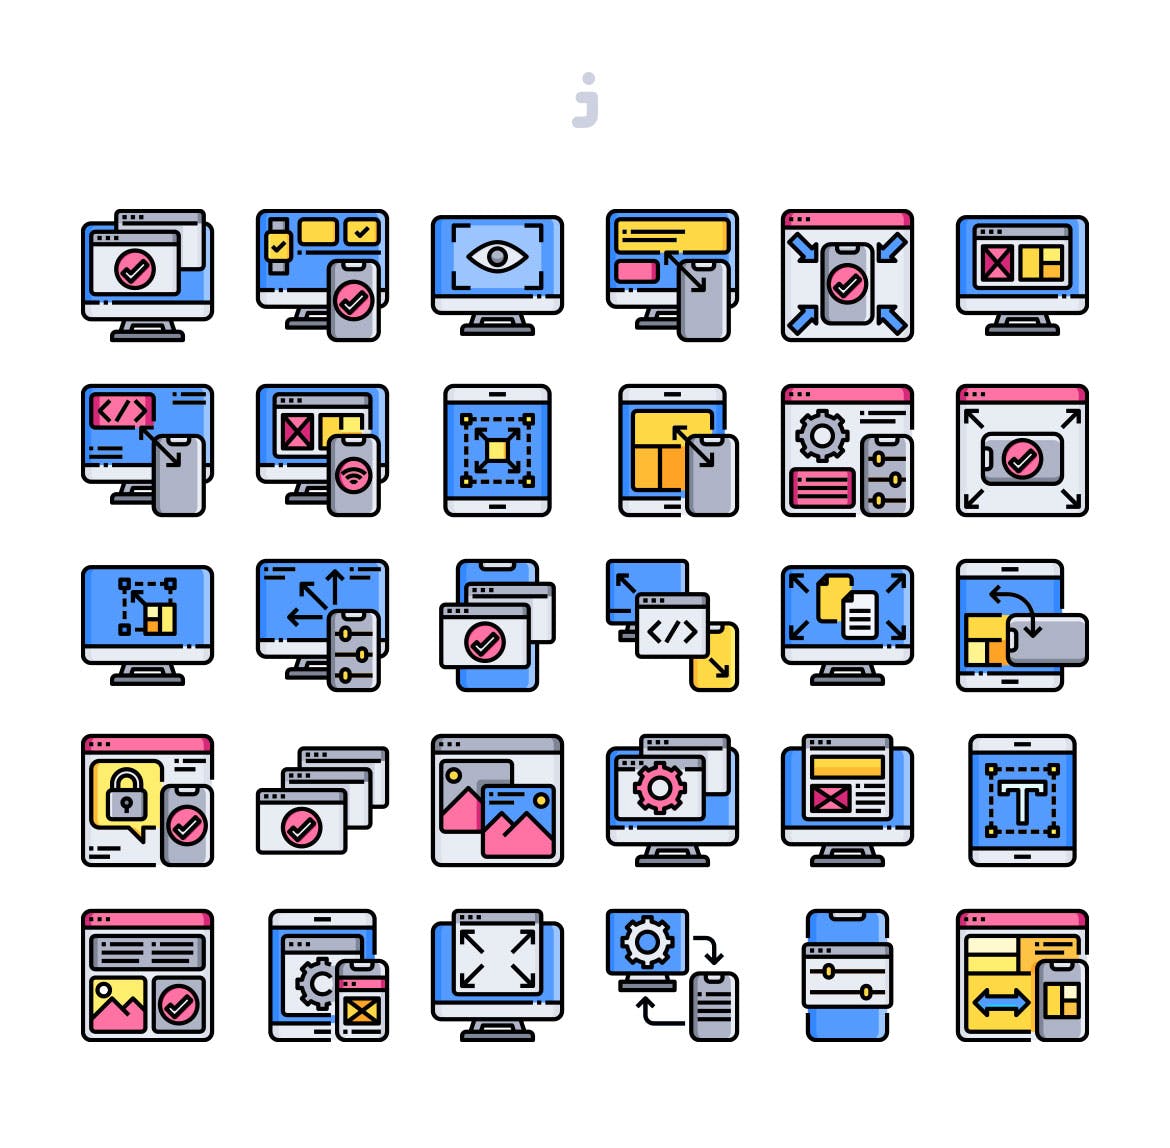 30枚响应式设计主题矢量图标素材 30 Responsive Design Icons插图(1)